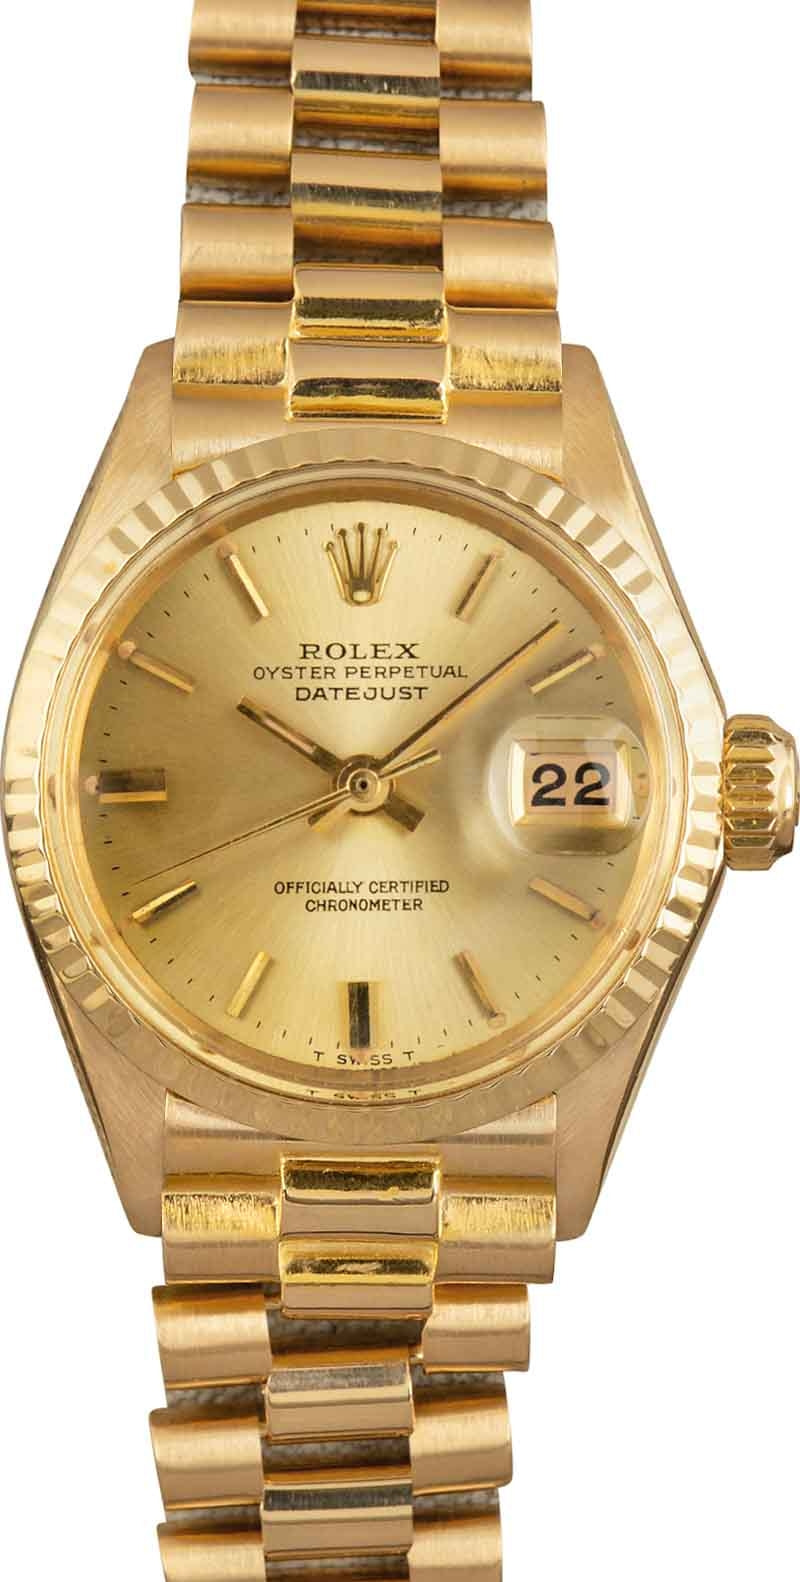 Rolex Datejust 6517 Watches - Bob's Watches